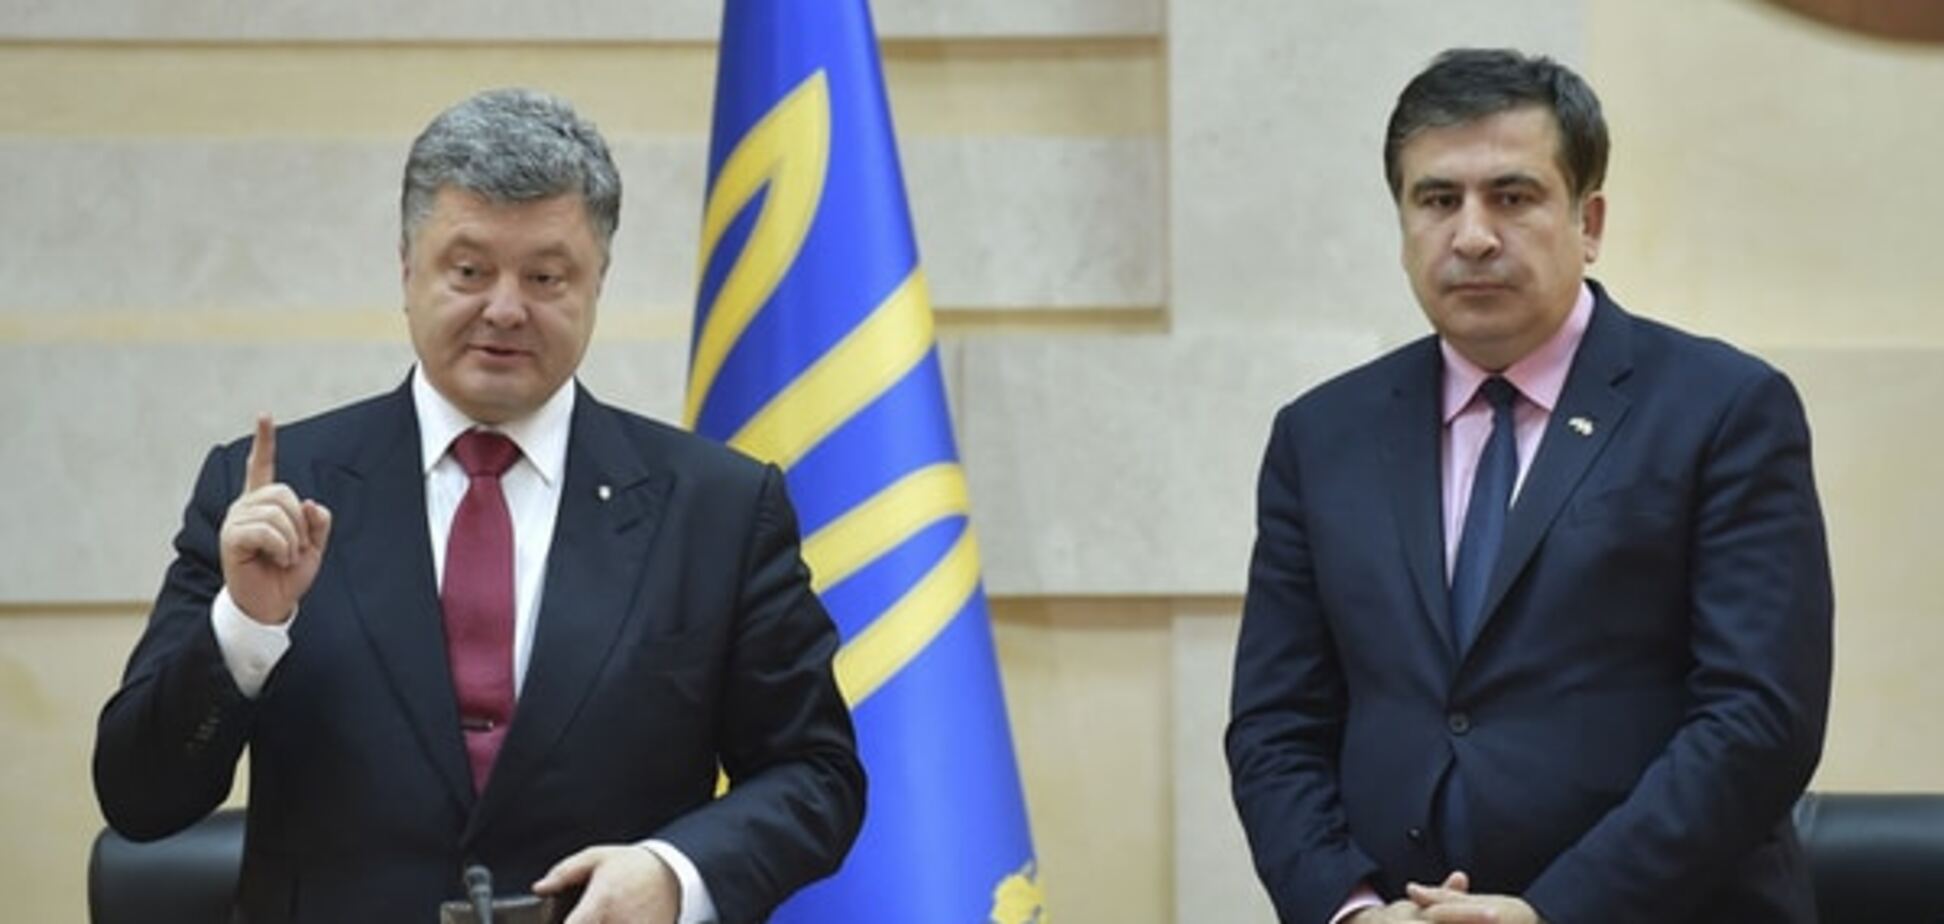 Порошенко заявил, что Саакашвили станет отличным премьером, но не в Украине